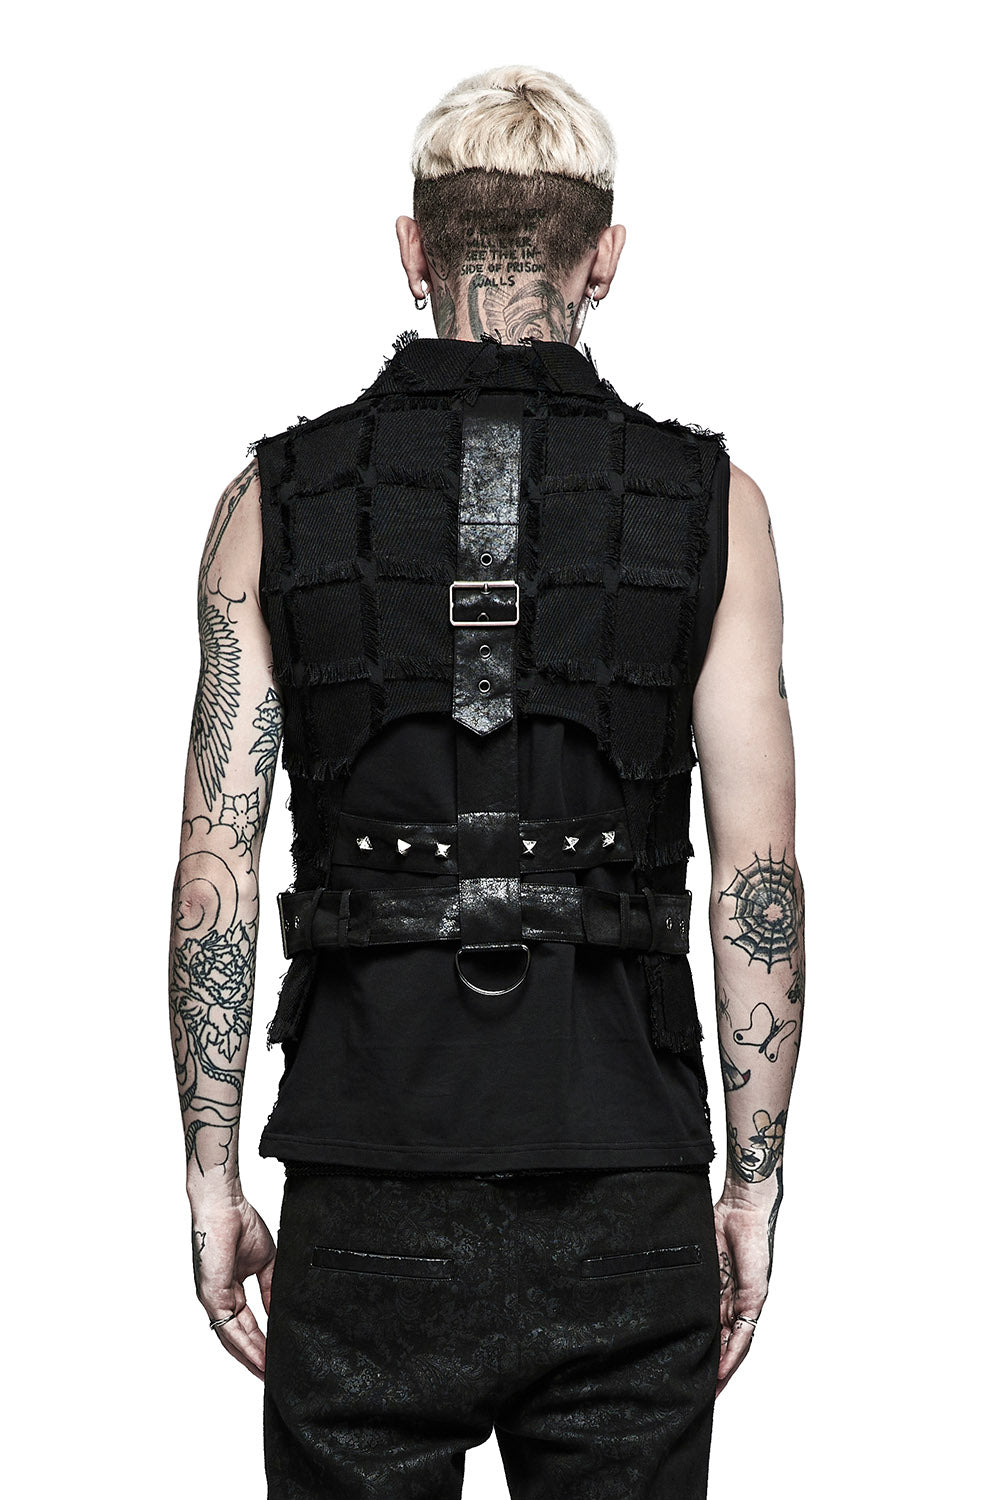 Punk Rave Black Gothic Punk Metal Hollow-out Chain Vest Top for Men 